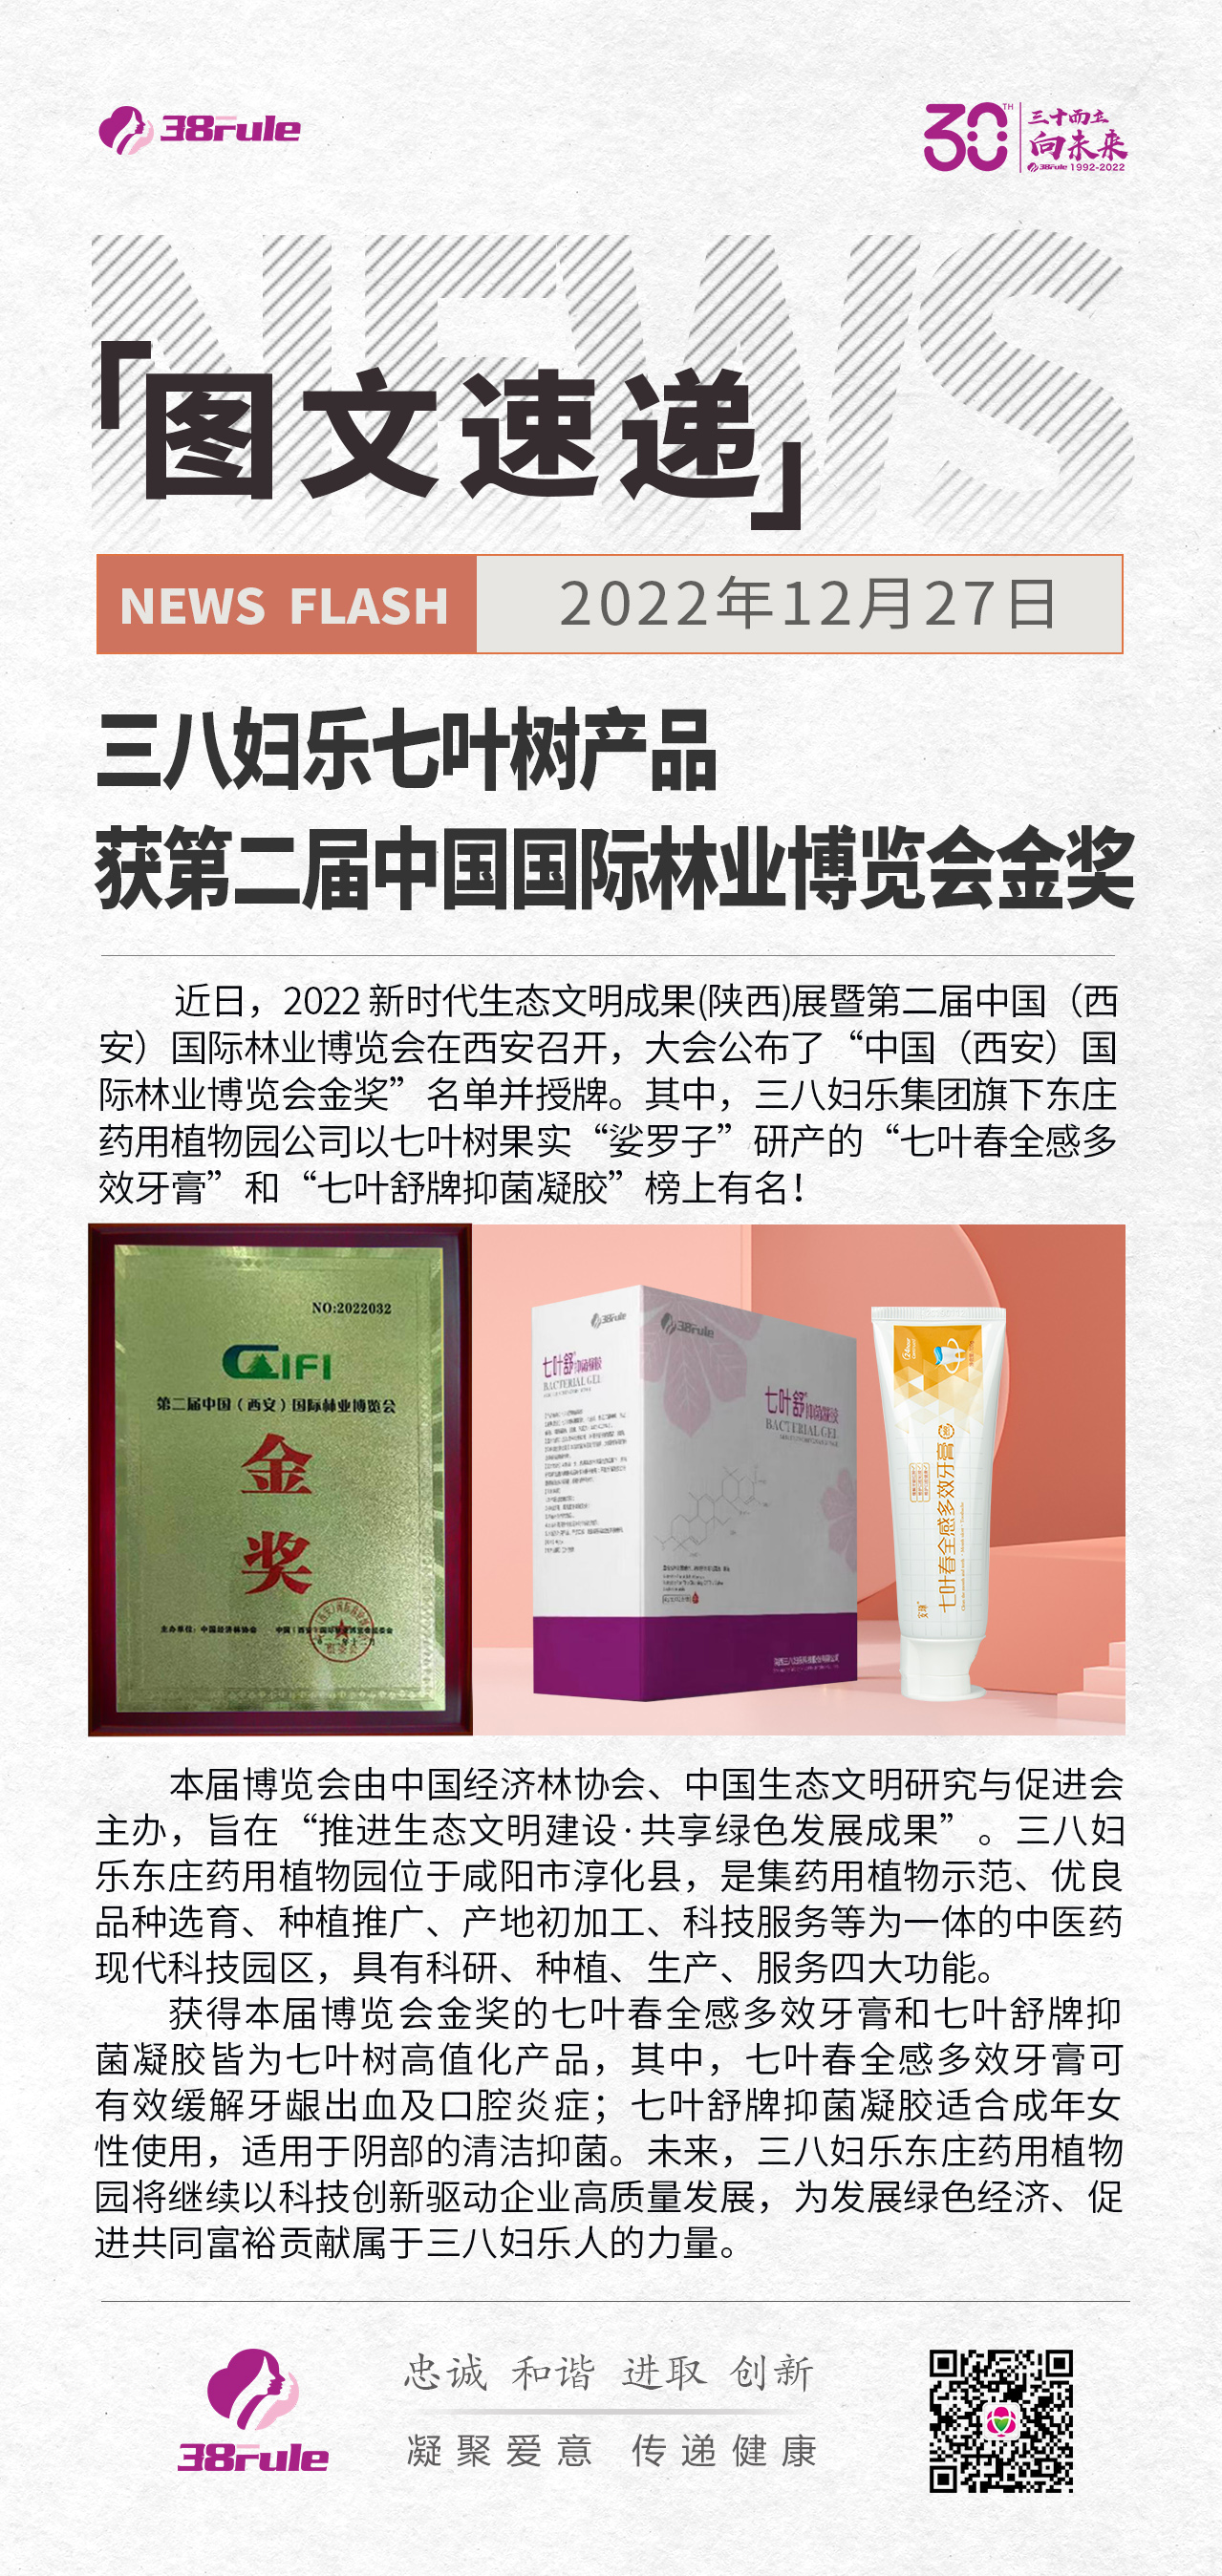 三八妇乐七叶树产品 获第二届中国国际林业博览会金奖